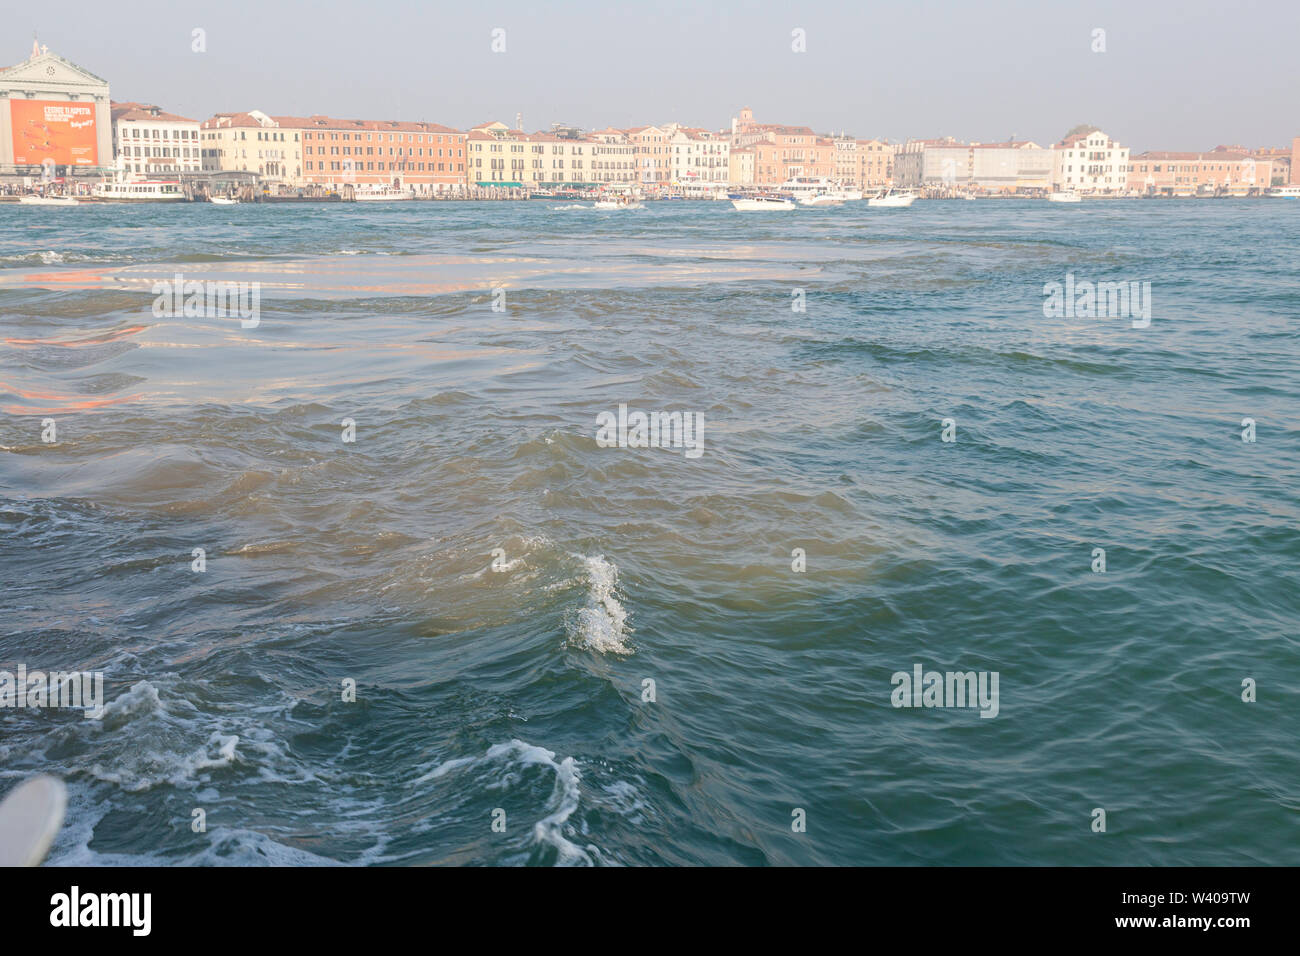 Largage du carburant par un passager de croisière dans le Bacino San Marco que le navire est entré dans le canal de la Giudecca, Venise, Vénétie, Italie, la pollution de la lagune. Le sli Banque D'Images